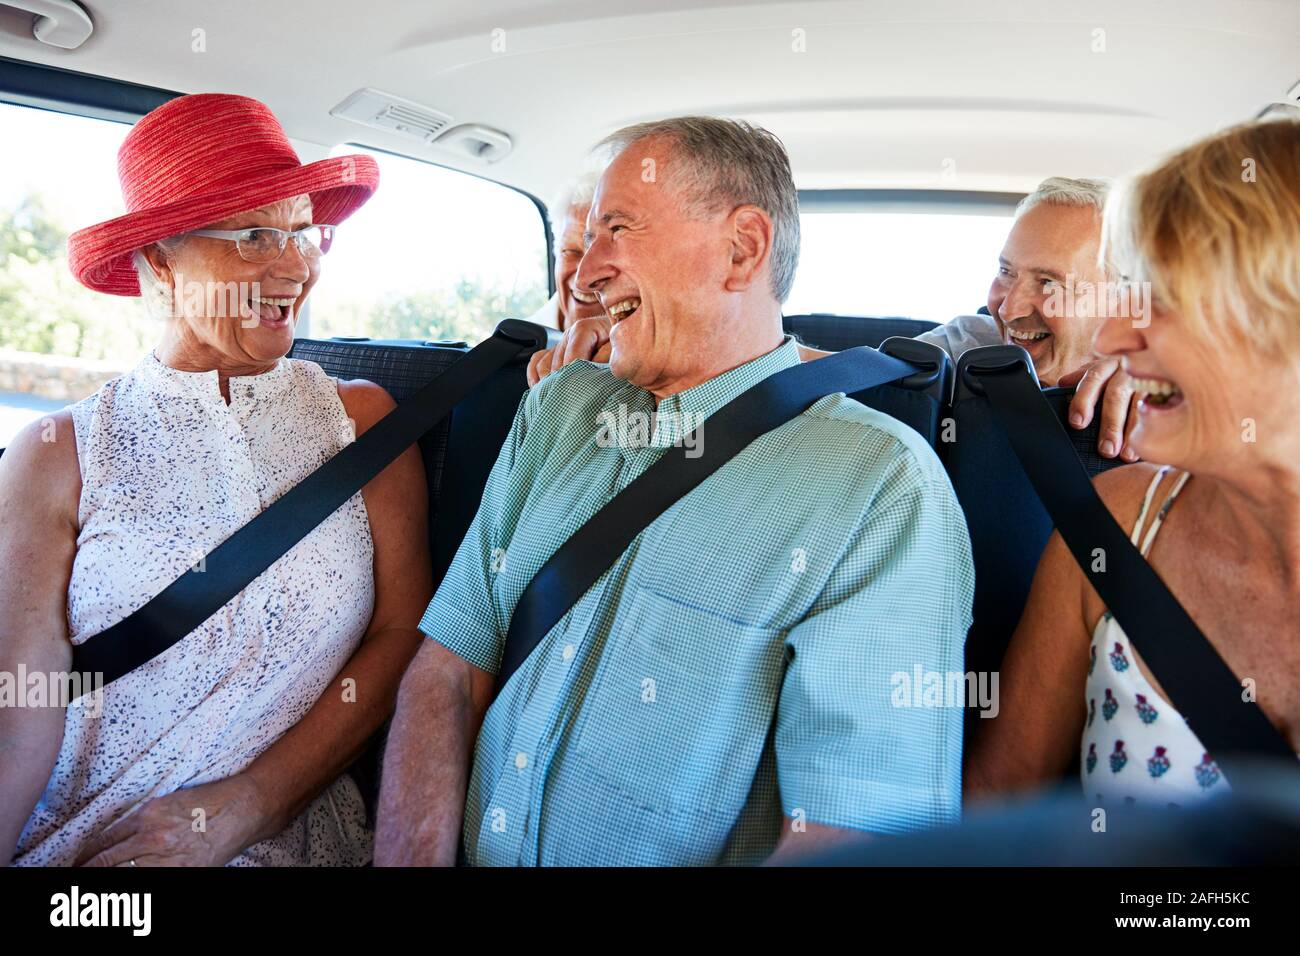 Gruppo di alti amici seduti nel retro del van essendo azionato per vacanza Foto Stock